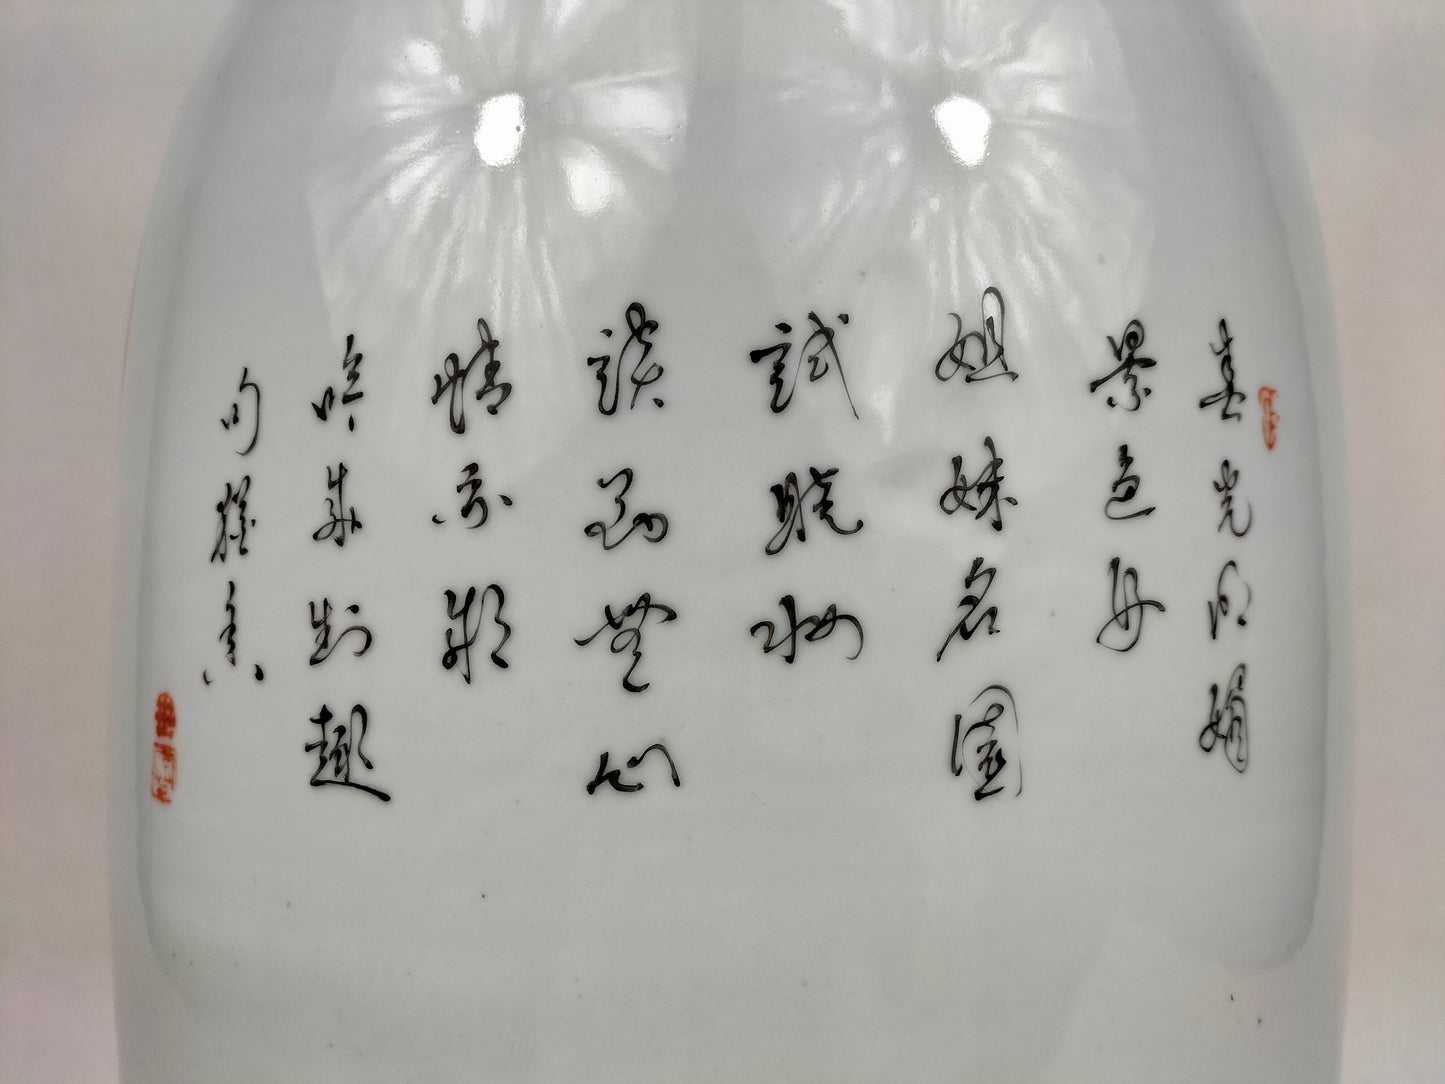 Bình hoa hồng lớn của gia đình Trung Quốc với khung cảnh khu vườn // Jingdezhen - thế kỷ 20